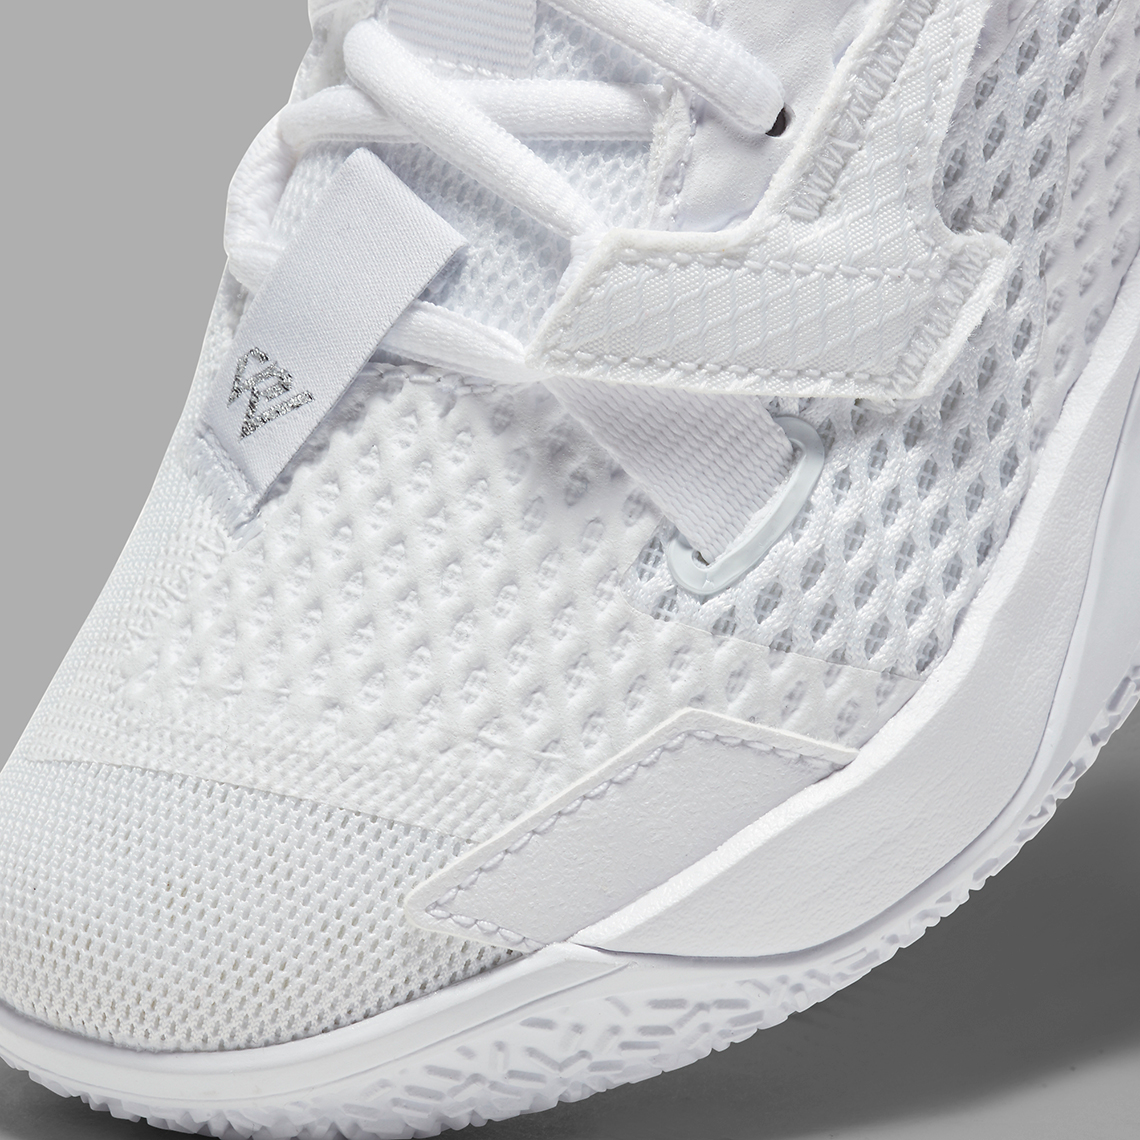 Jordan Why Not Zer0.4 Triple White CQ4230-101 | SneakerNews.com